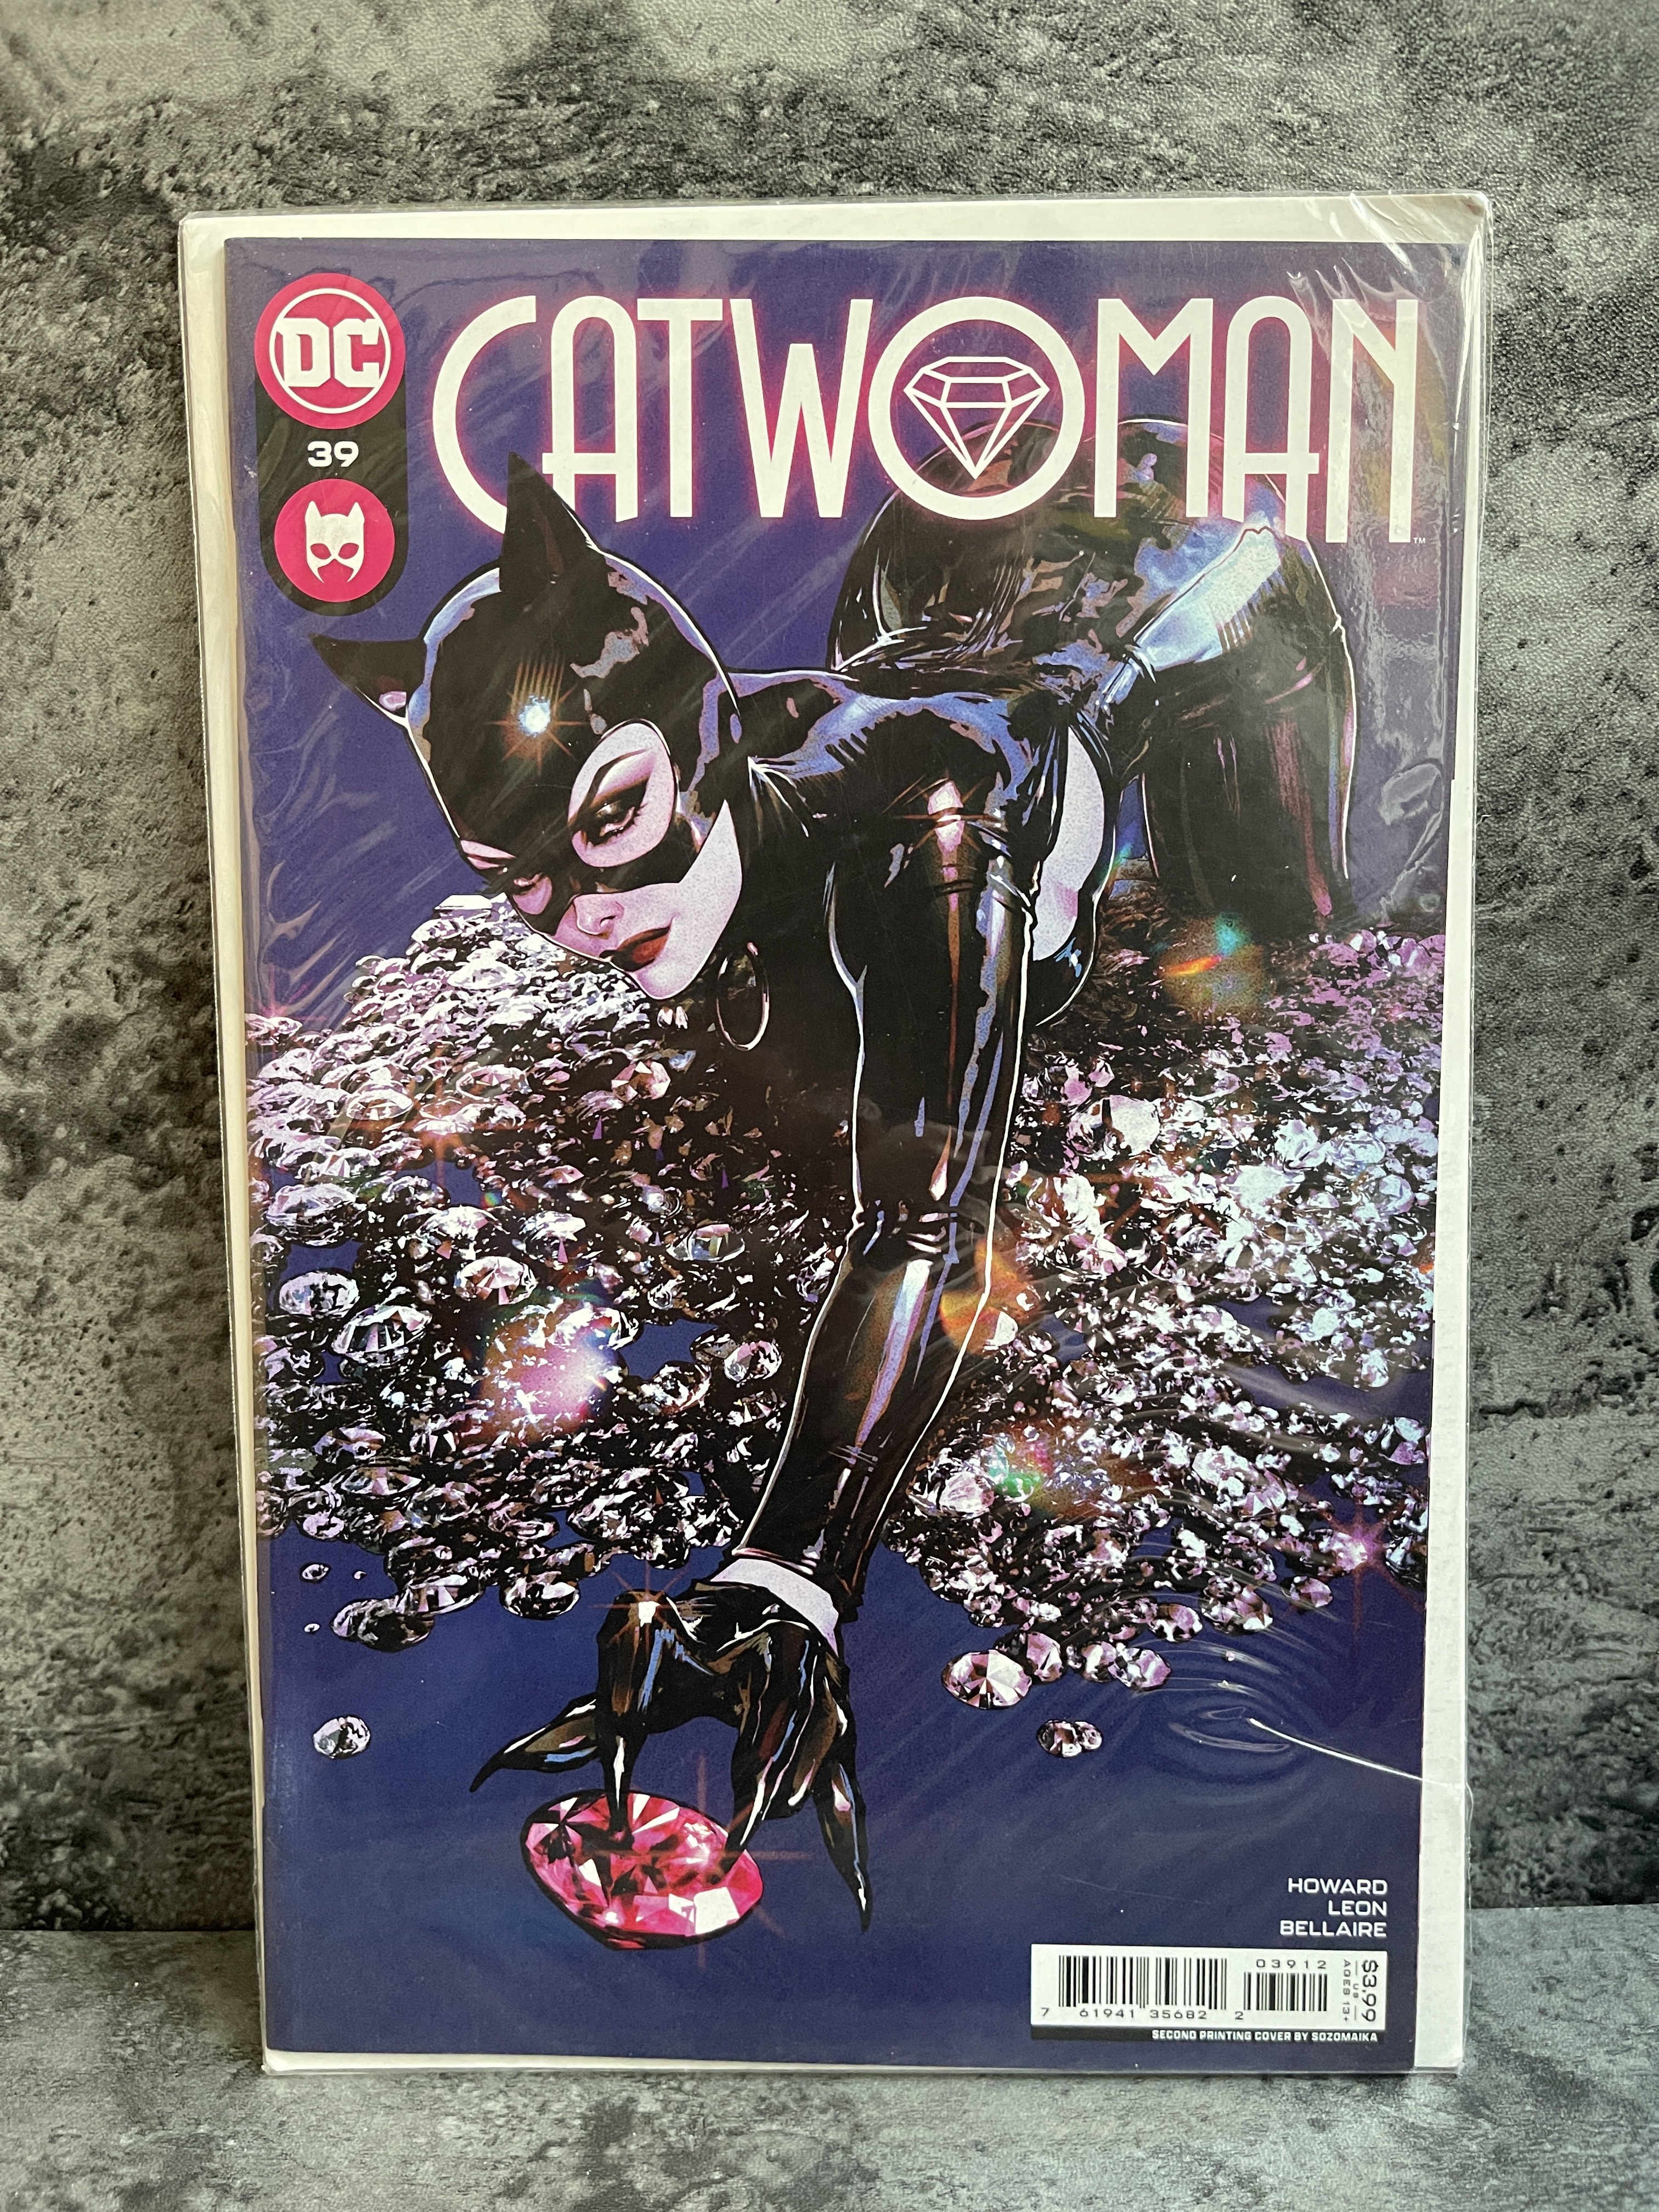 《本期全是好刊》美漫杂志海报刊物限定变体可评cgc猫女catwomen